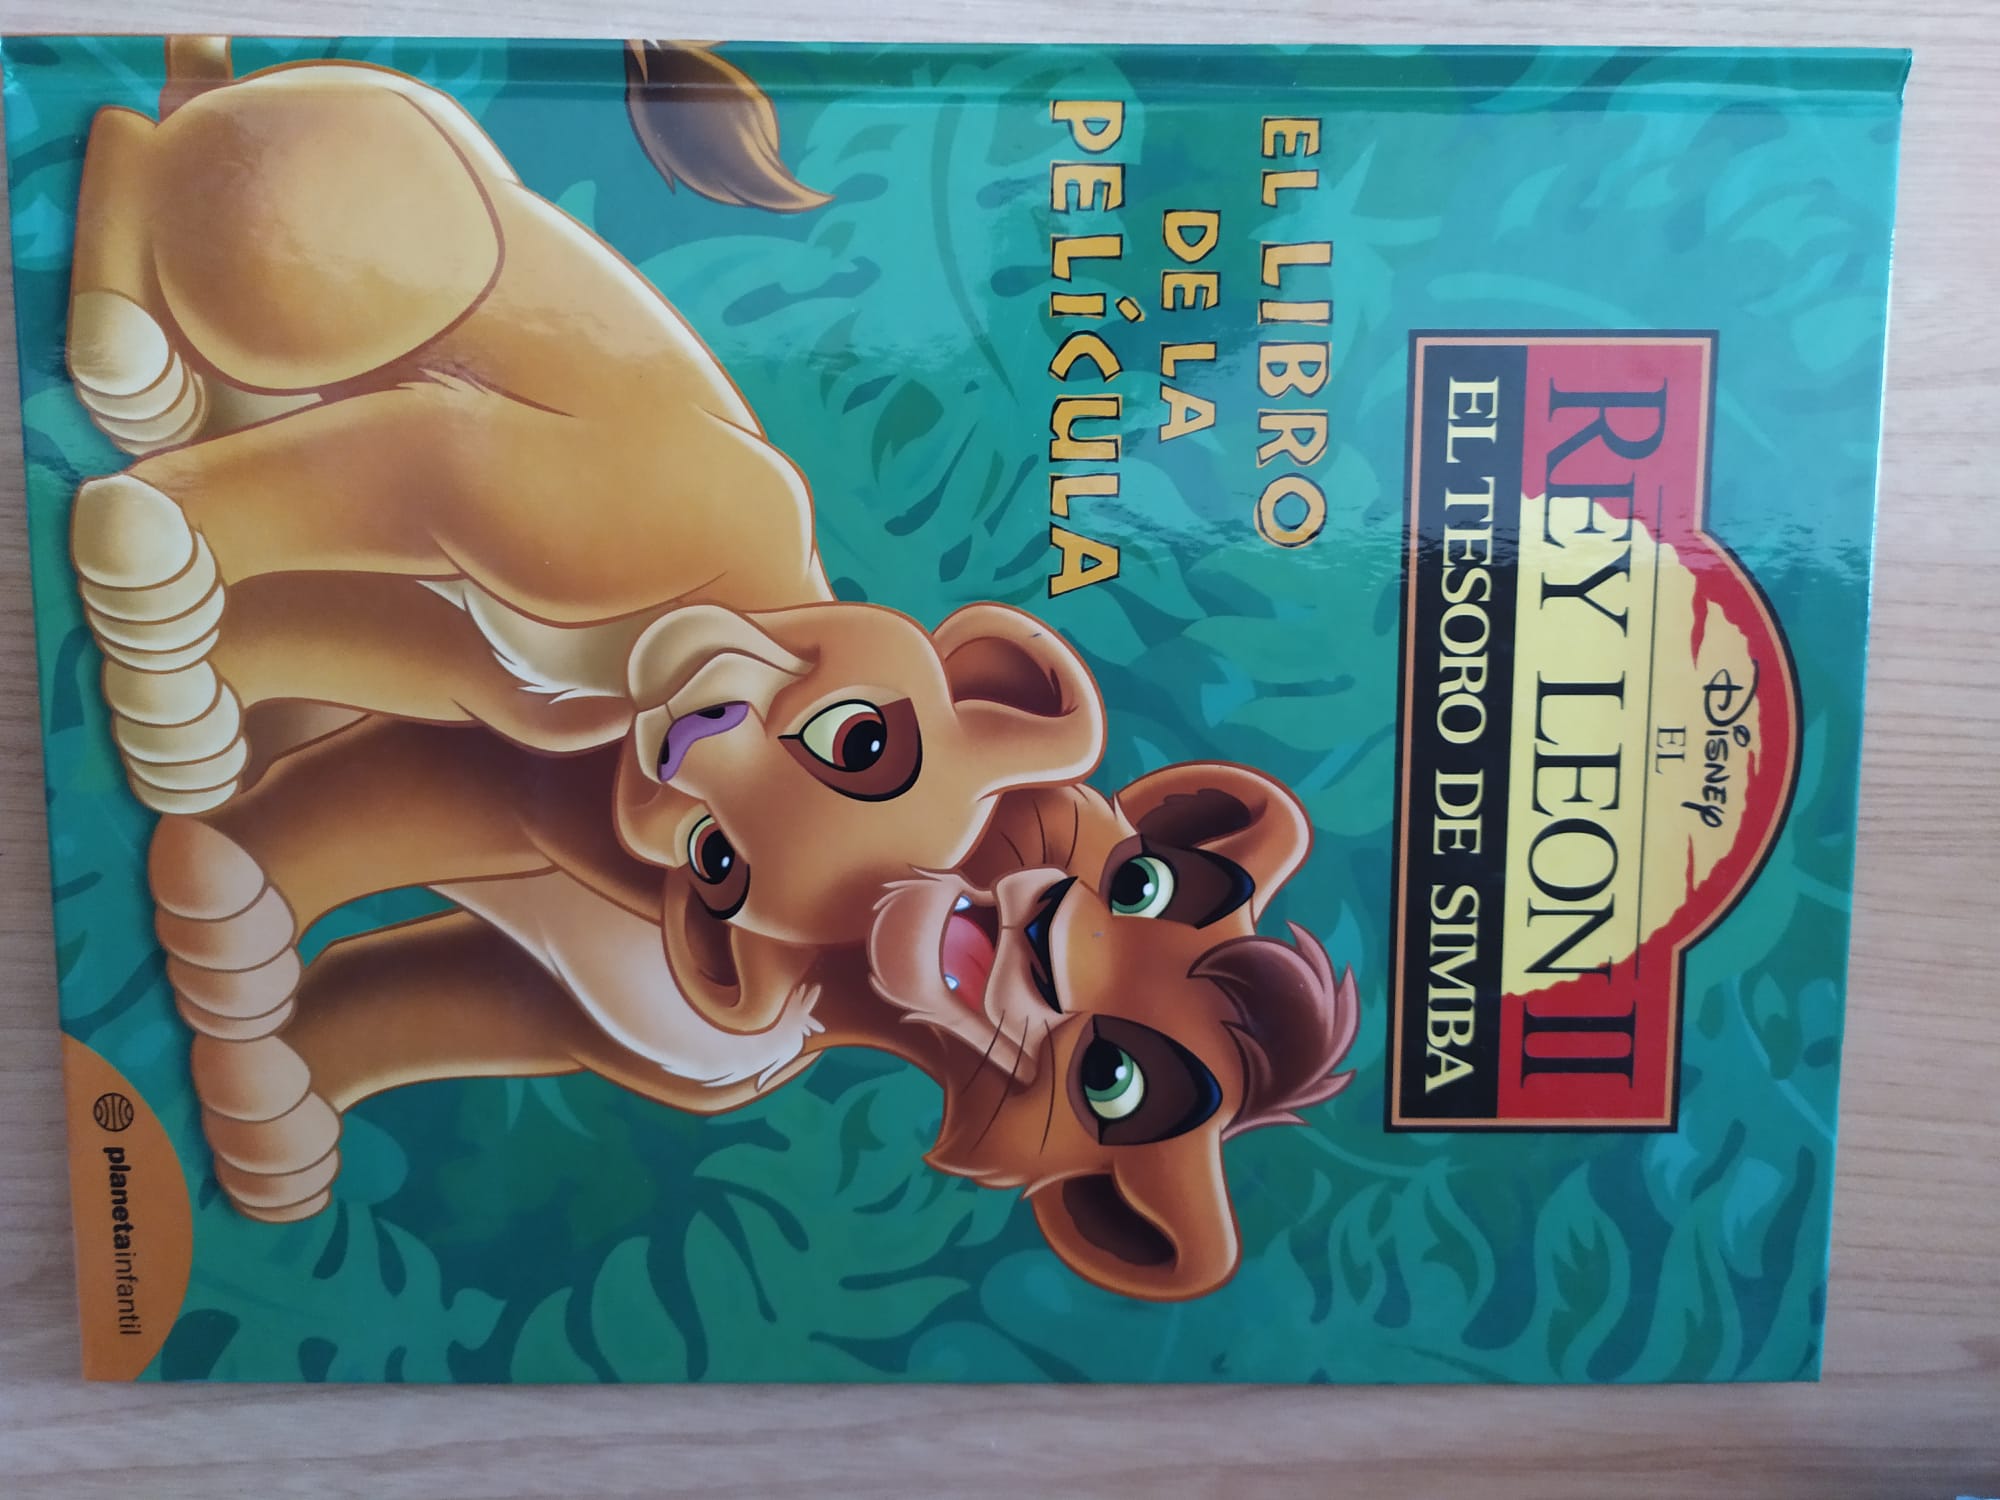 El Rey León 2: El tesoro de Simba